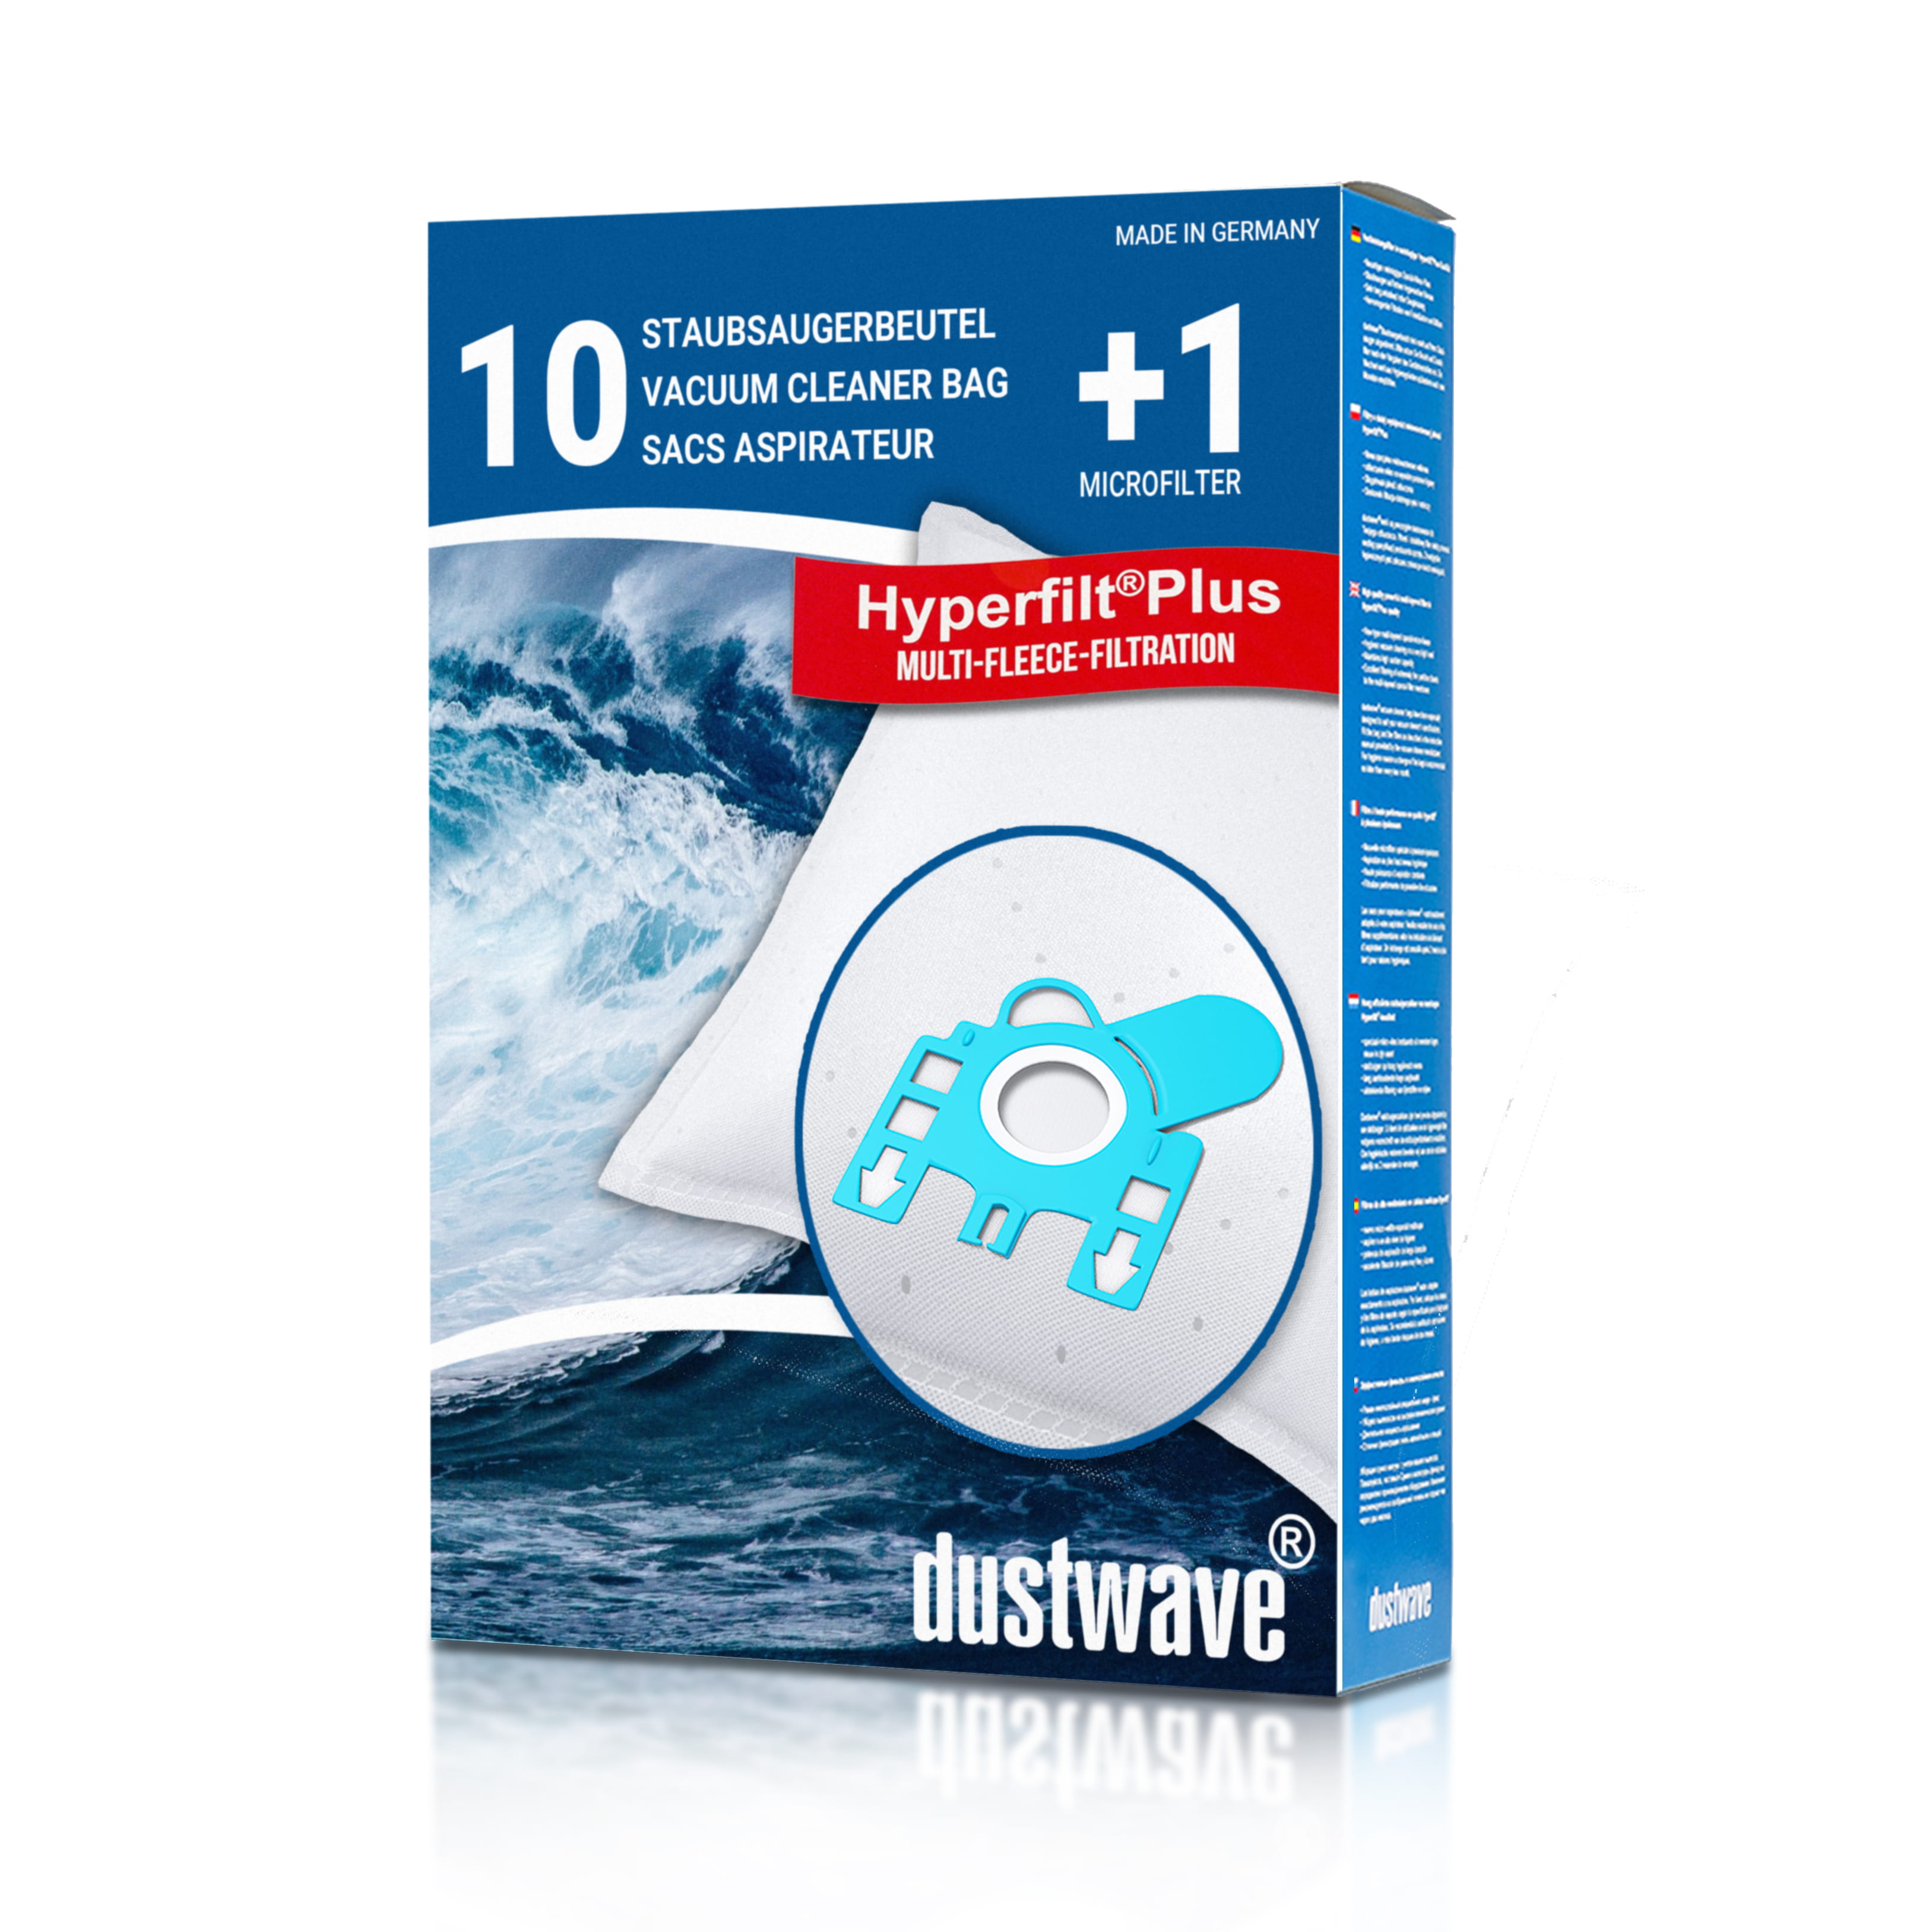 Dustwave® 10 Staubsaugerbeutel für Hoover T6710 / TRT6710 - hocheffizient, mehrlagiges Mikrovlies mit Hygieneverschluss - Made in Germany